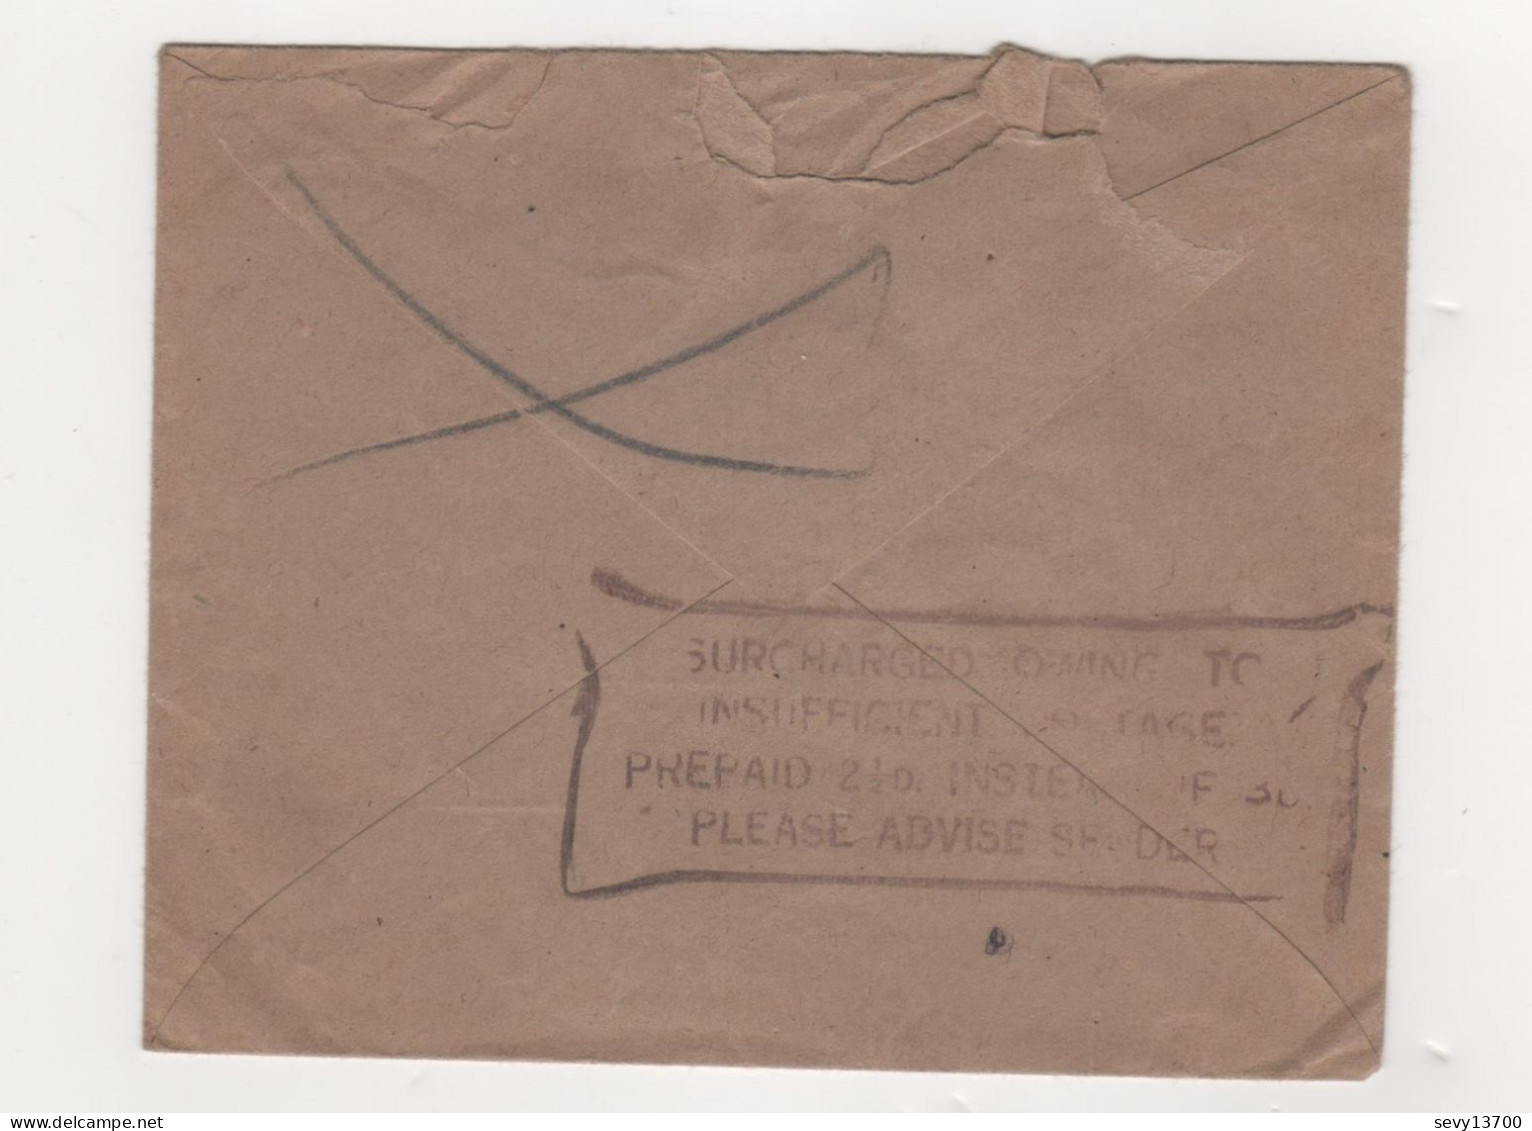 Enveloppe Avec Timbre 2 1/2 Roi Georges, 22 Octobre 1946 Et Timbre Taxe Français De 3 F - Marcofilia